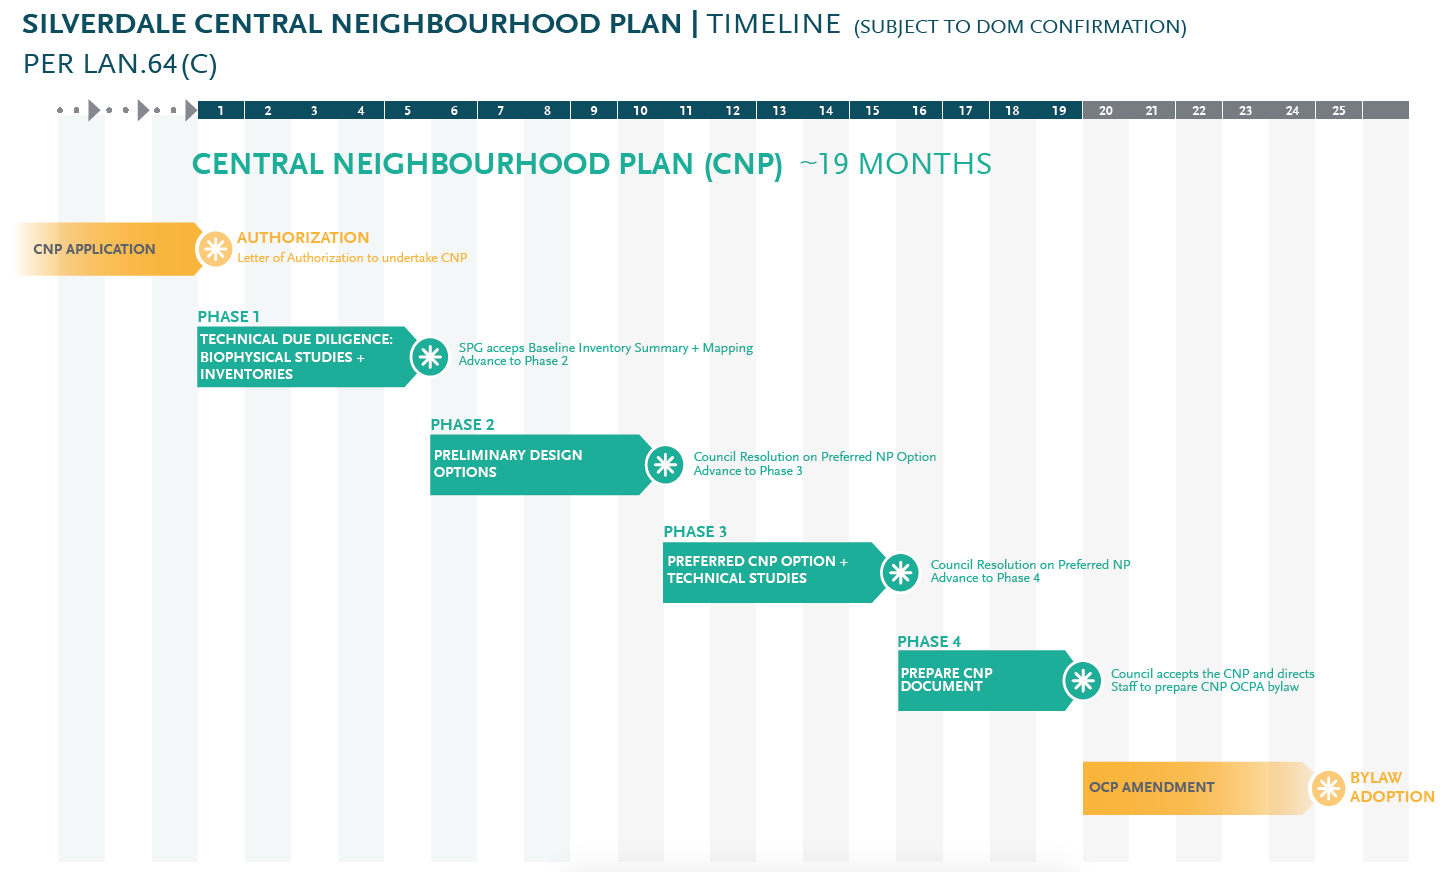 Nault Group - Silverdale CNP Timeline